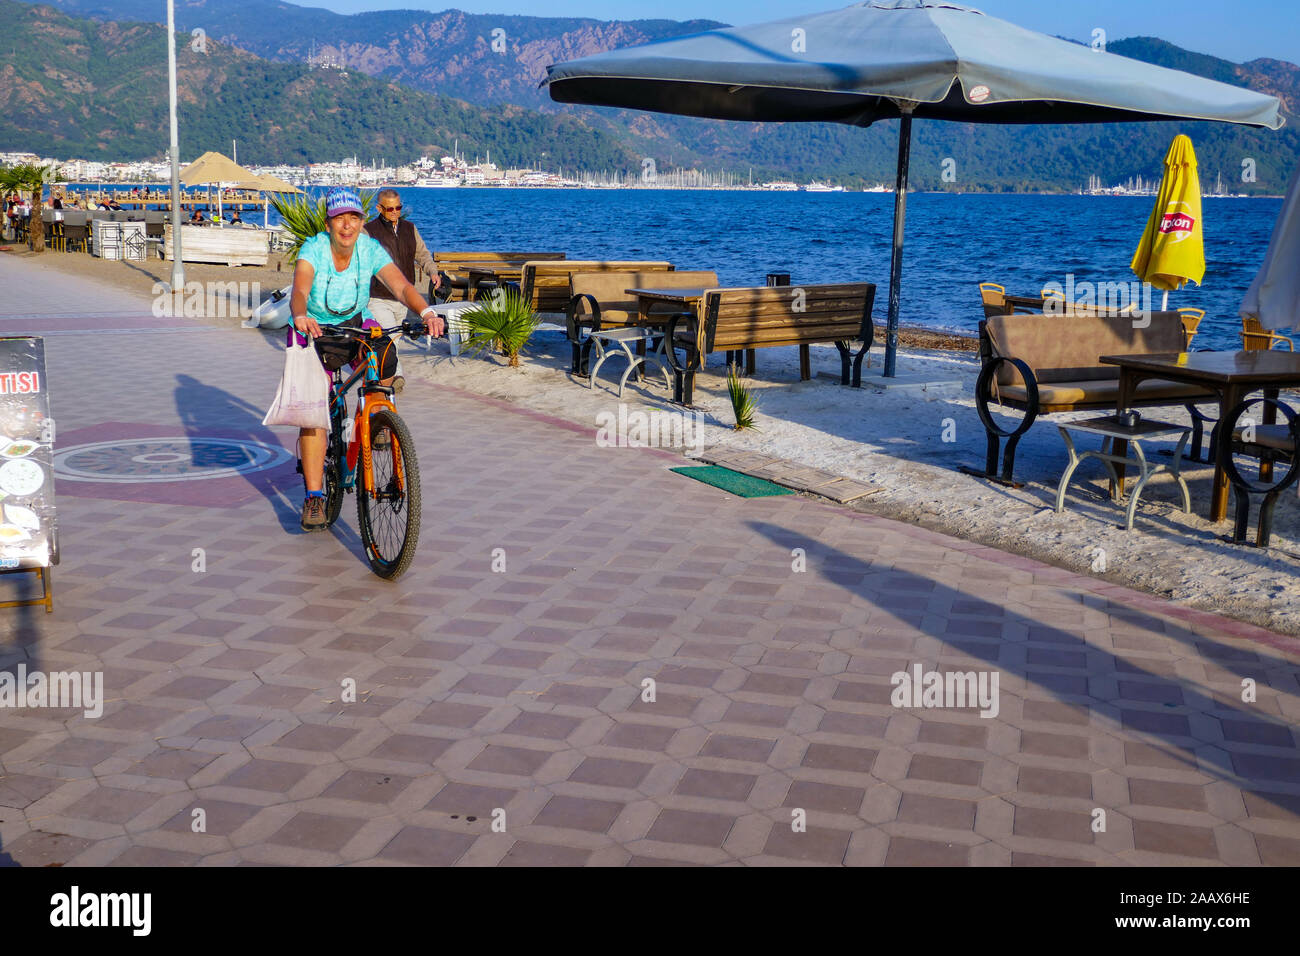 Femme à vélo sur front de mer, Mamaris, une ville balnéaire populaire dans le sud de la Turquie, le temps d'automne. Banque D'Images